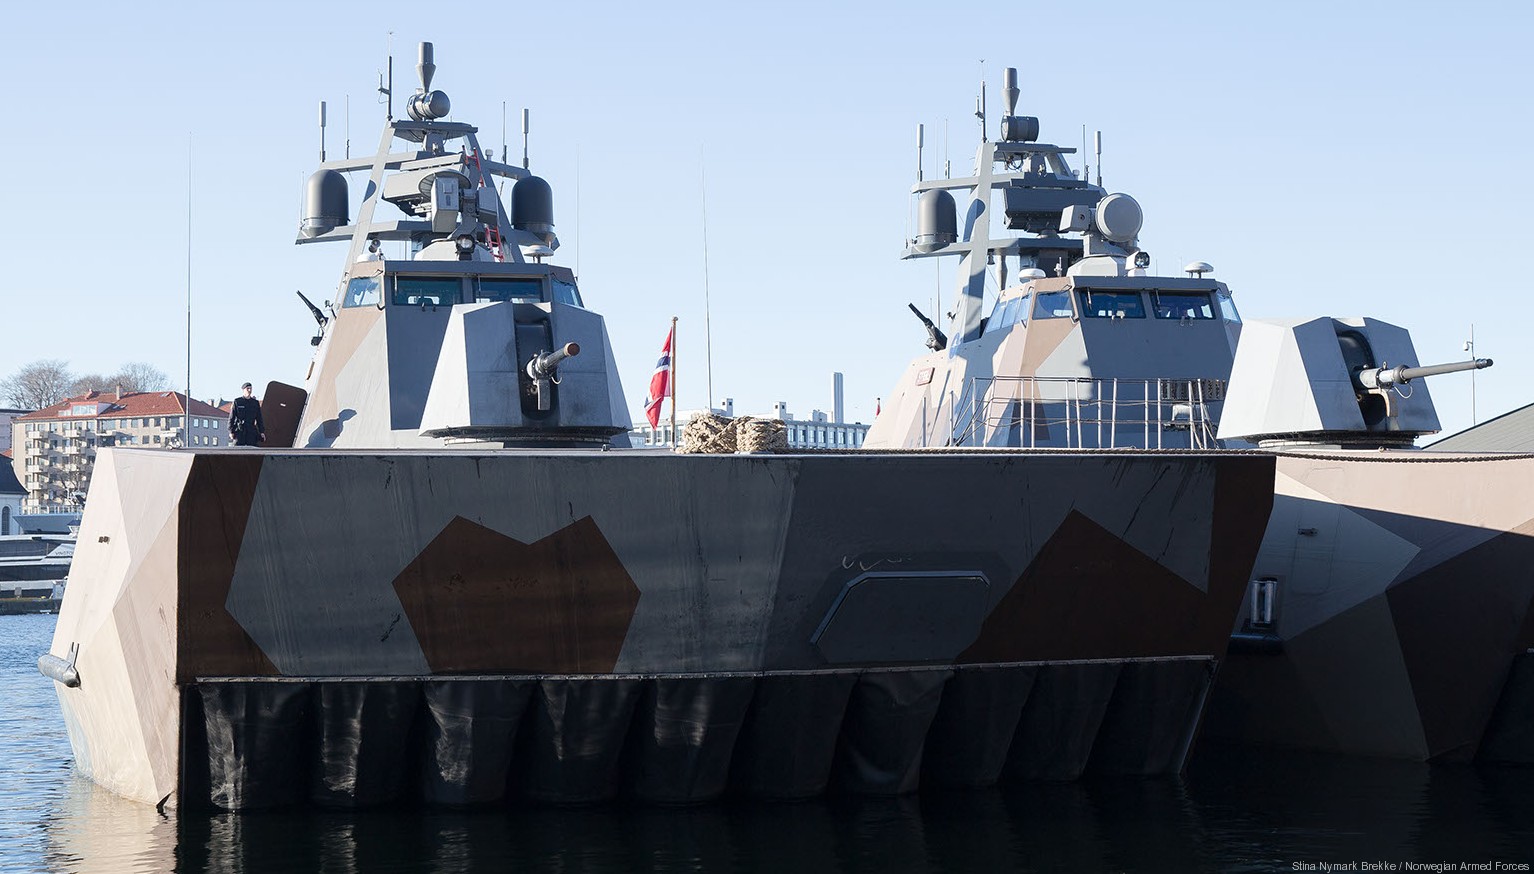 skjold class corvette knm hnoms royal norwegian navy sjoforsvaret 19